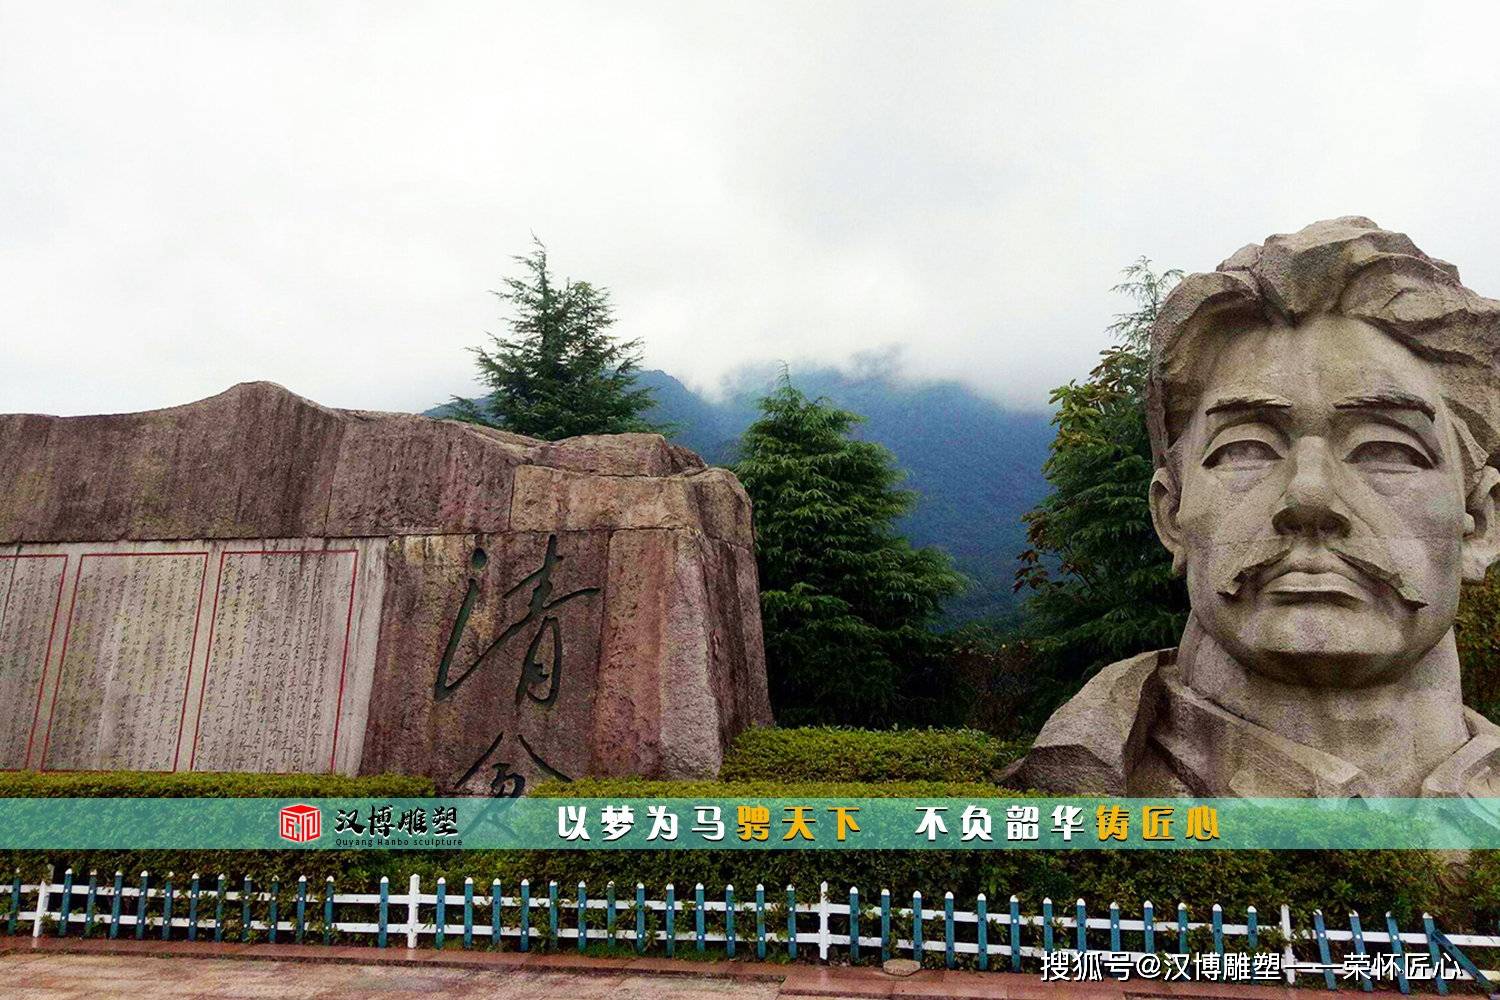 历史人物雕塑 中国历史上杰出的人物